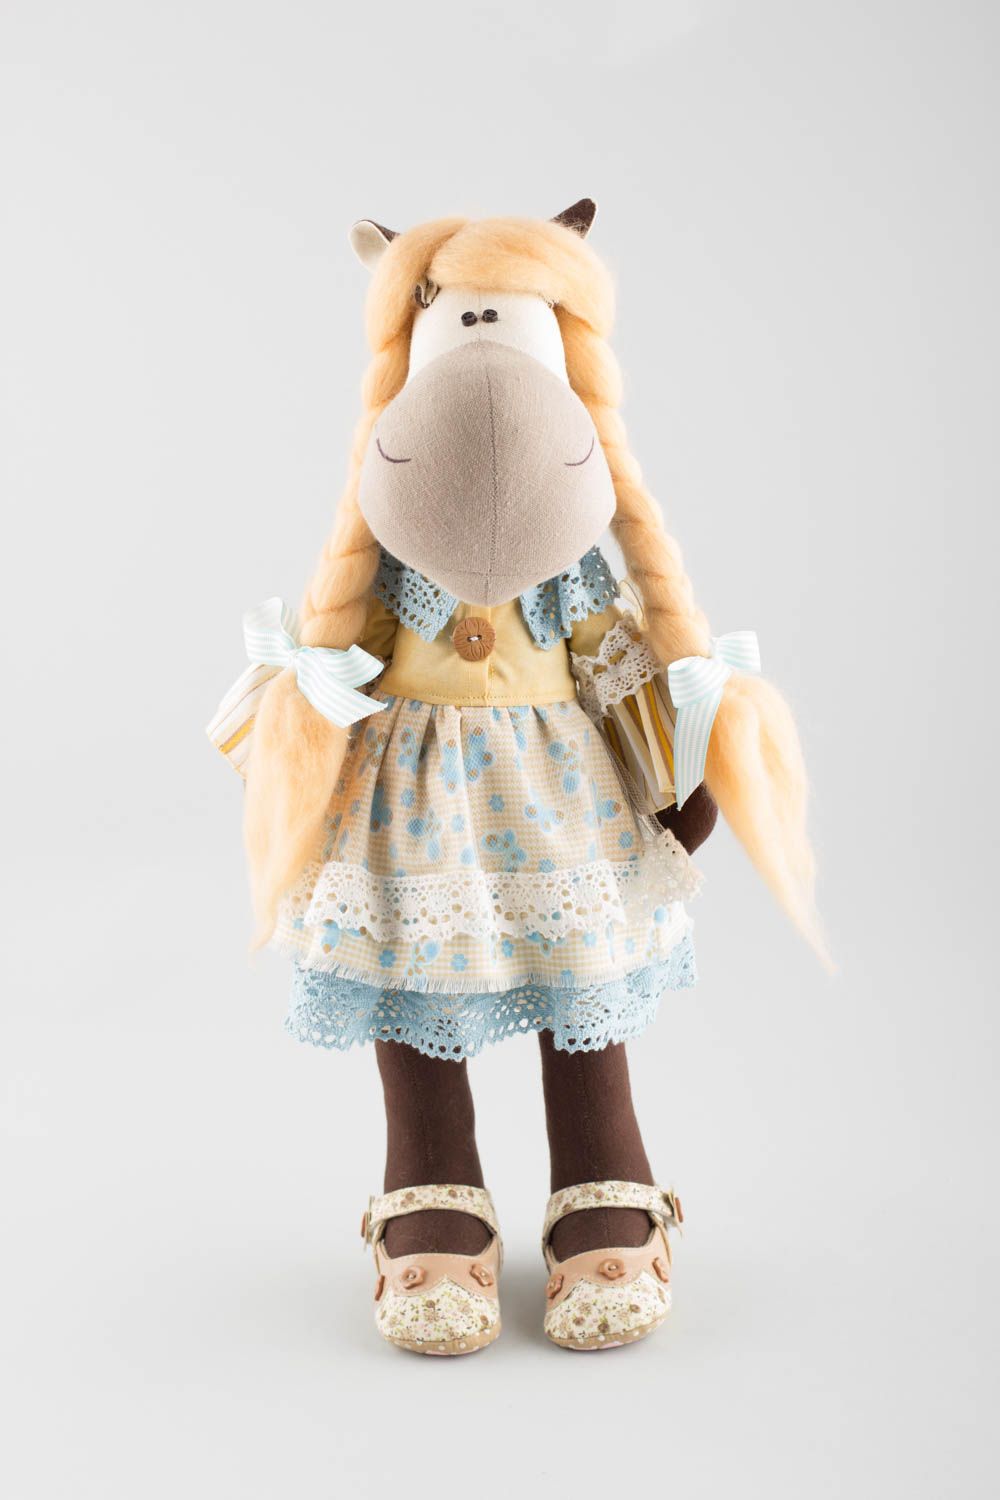 Handmade Stofftier Pferd in Kleidung aus Leinen und Baumwolle für Kind und Dekor foto 2